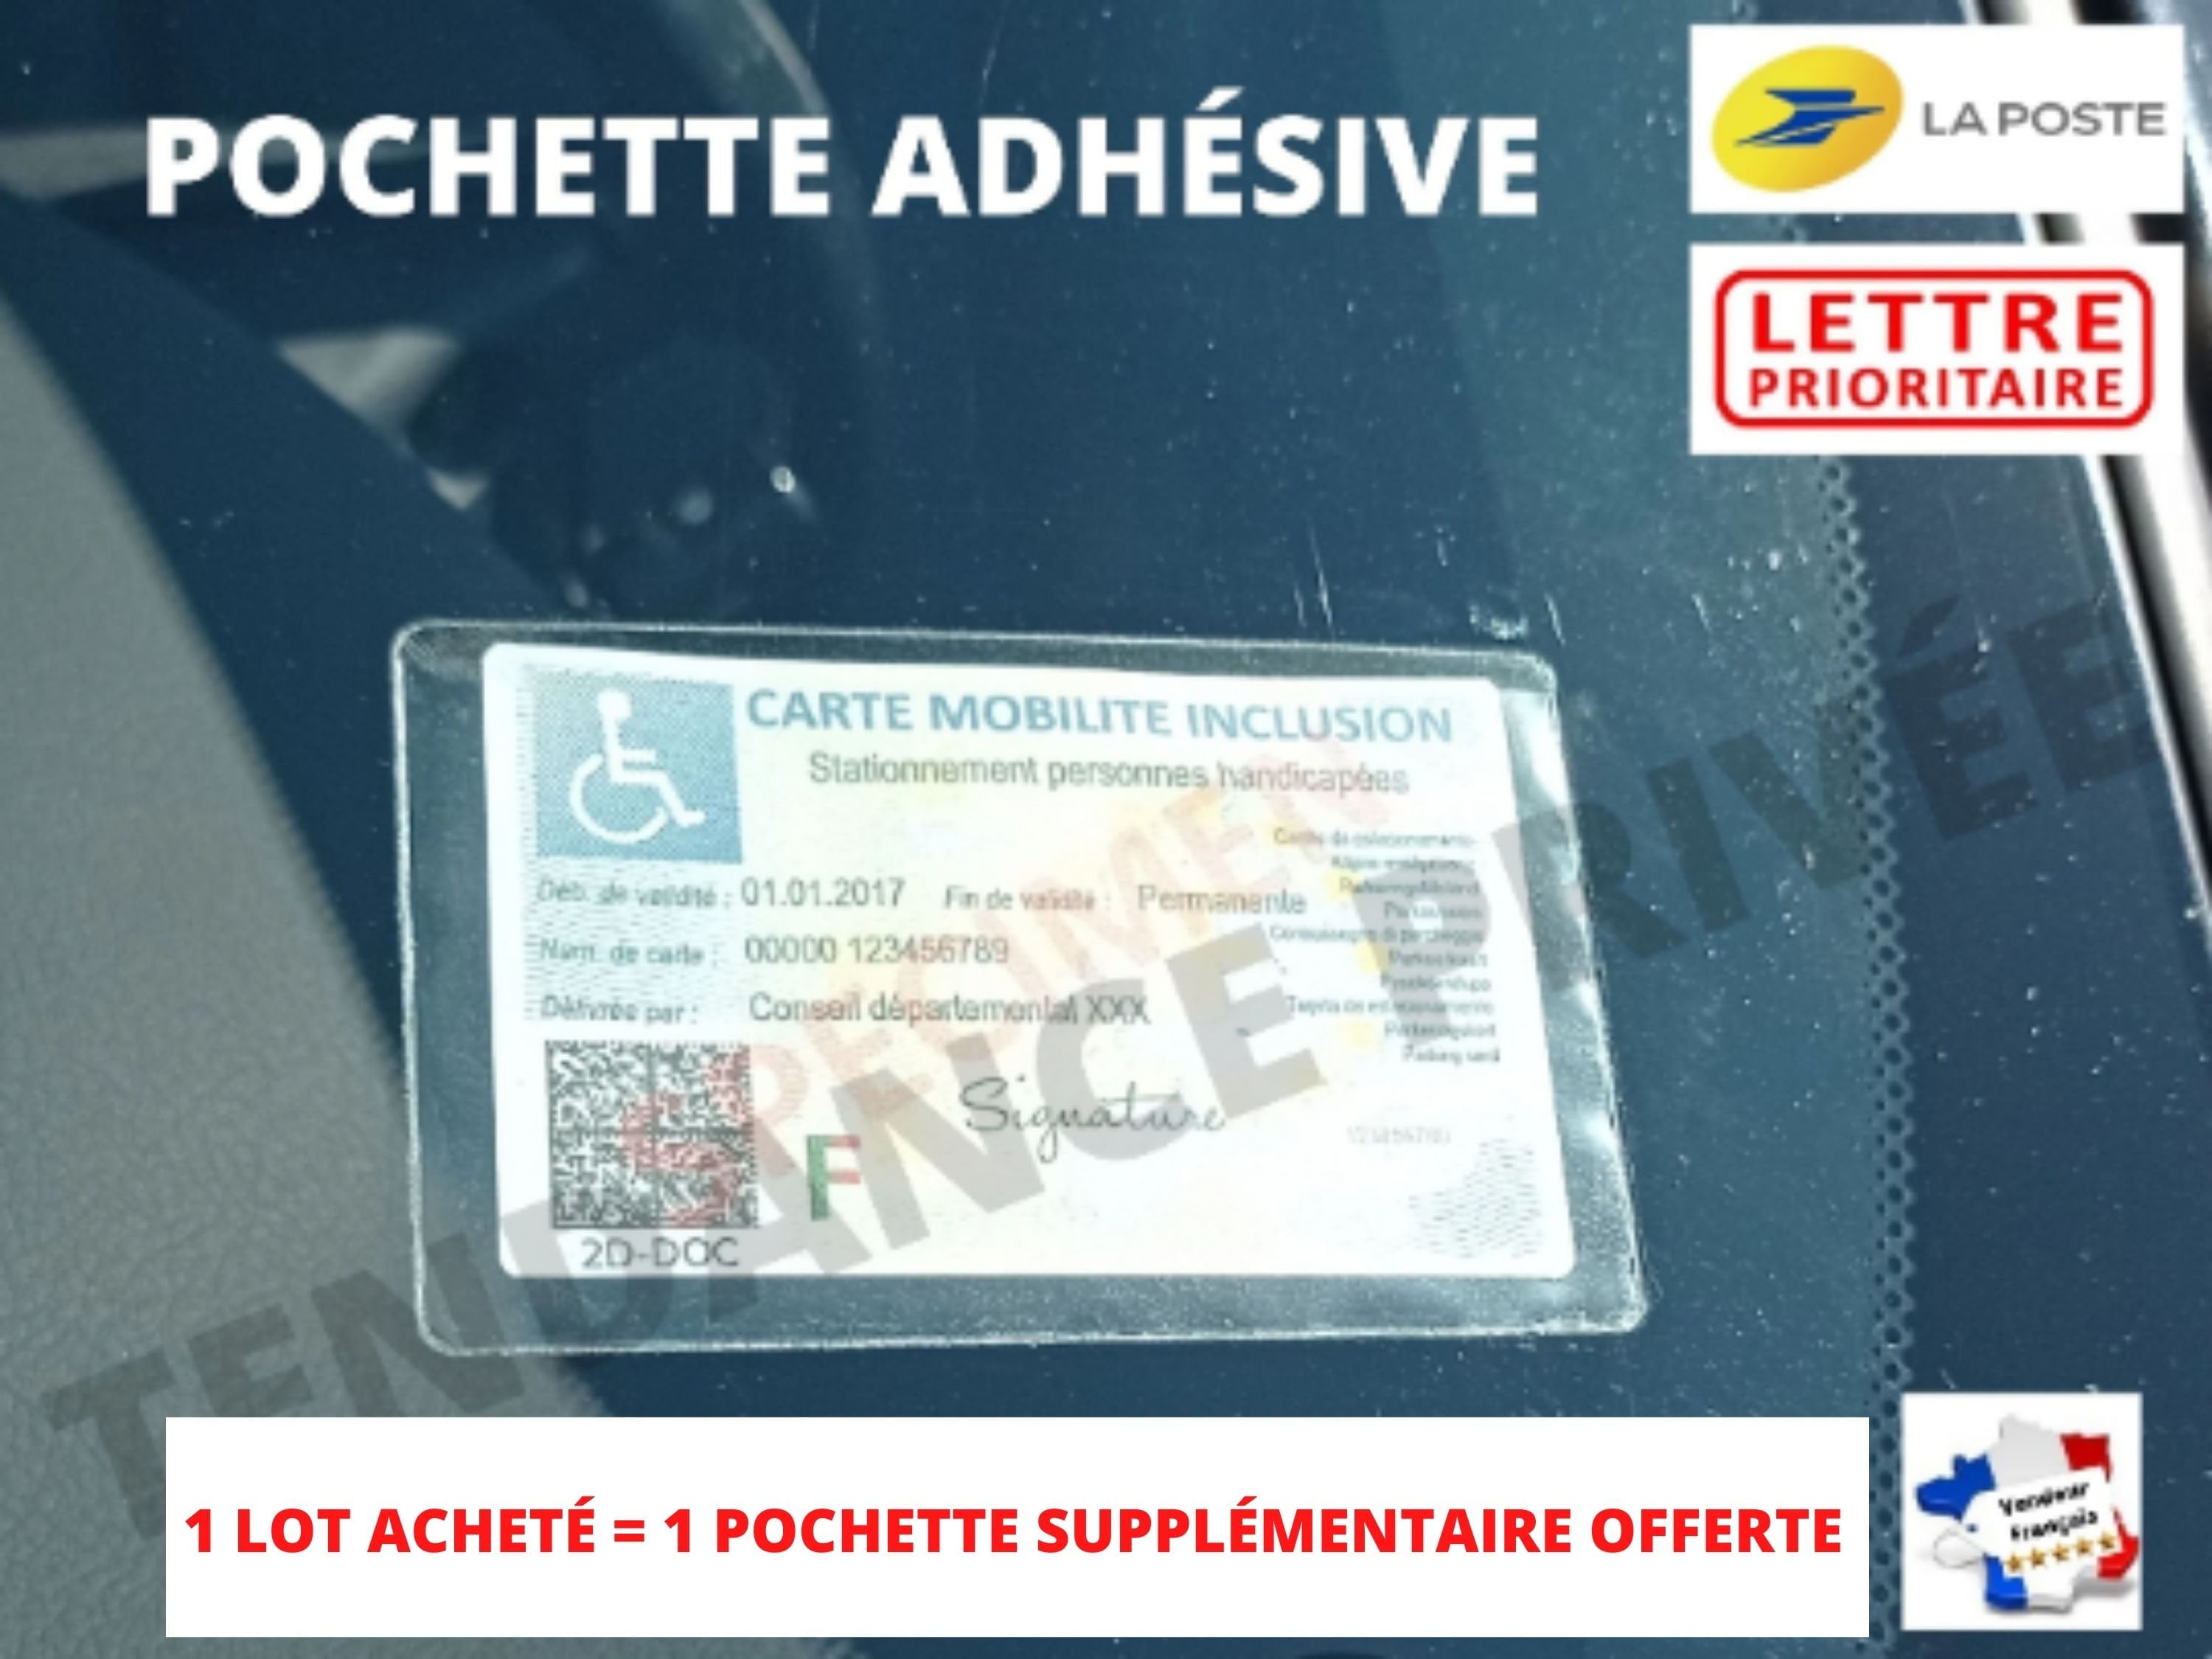 Autocollant Handicapé De Stationnement Sur La Voiture Image stock - Image  du ecran, étiquette: 53591955